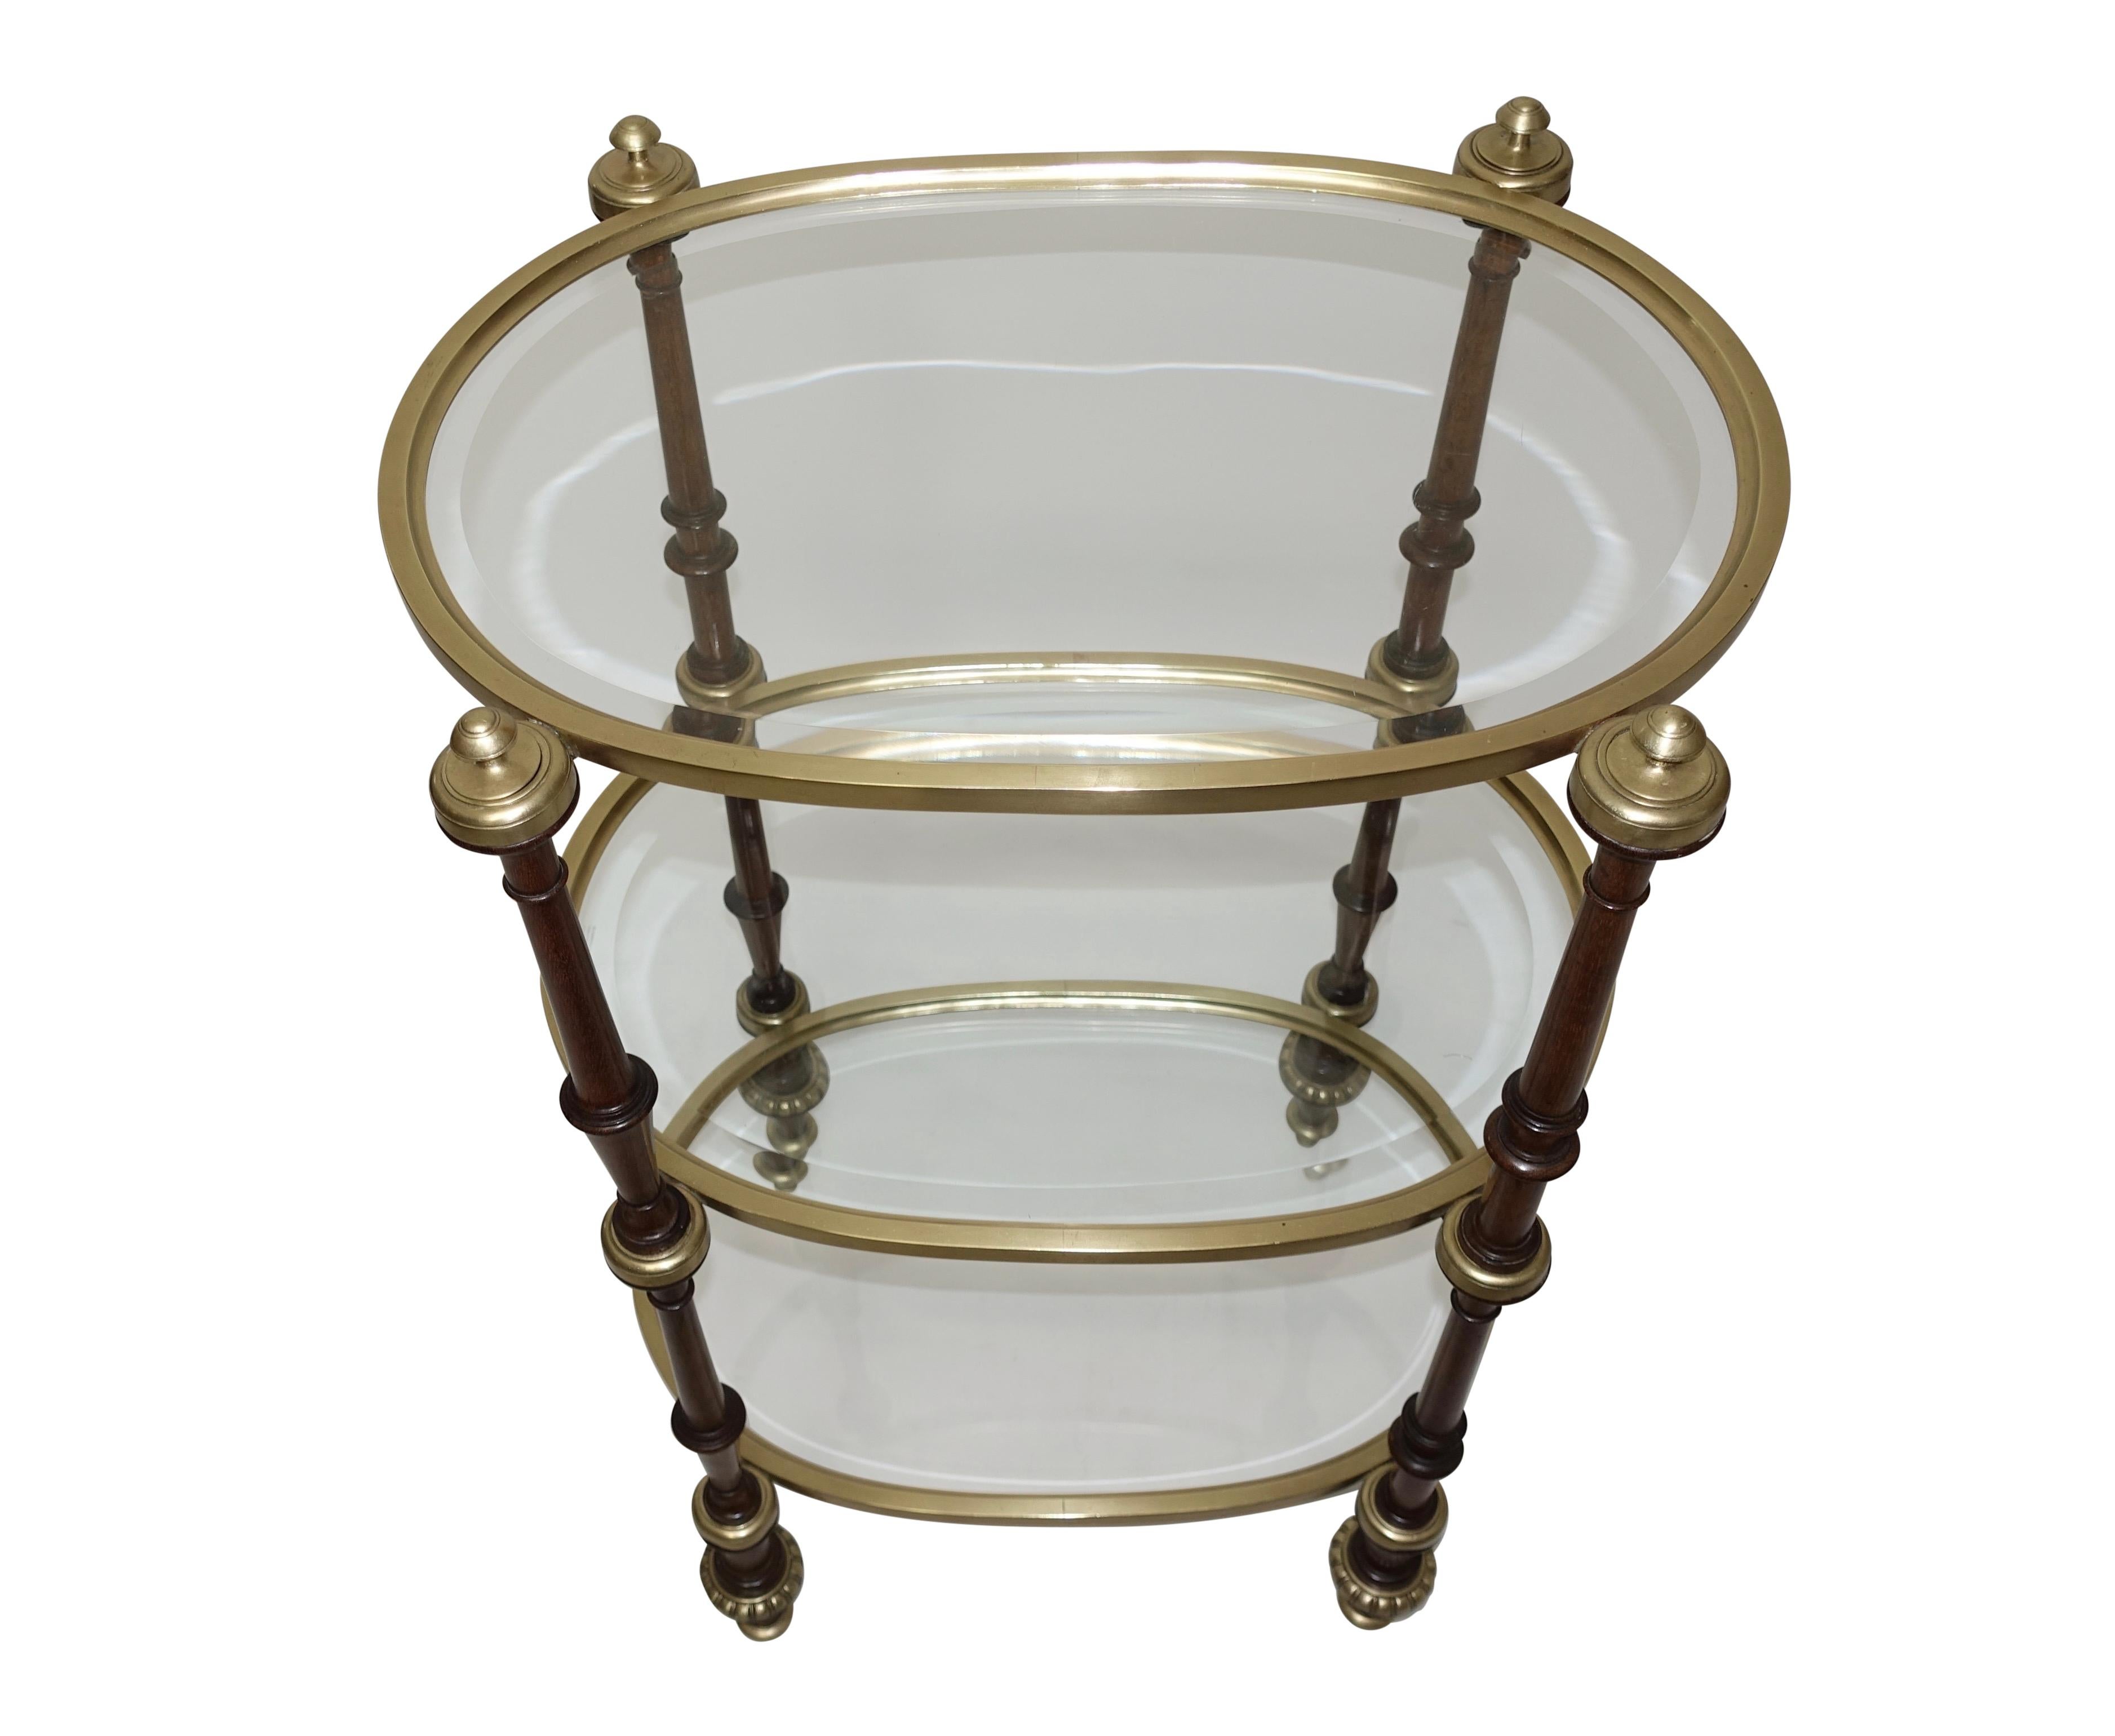 English Regency Style Mahogany and Brass Three-Tier Table